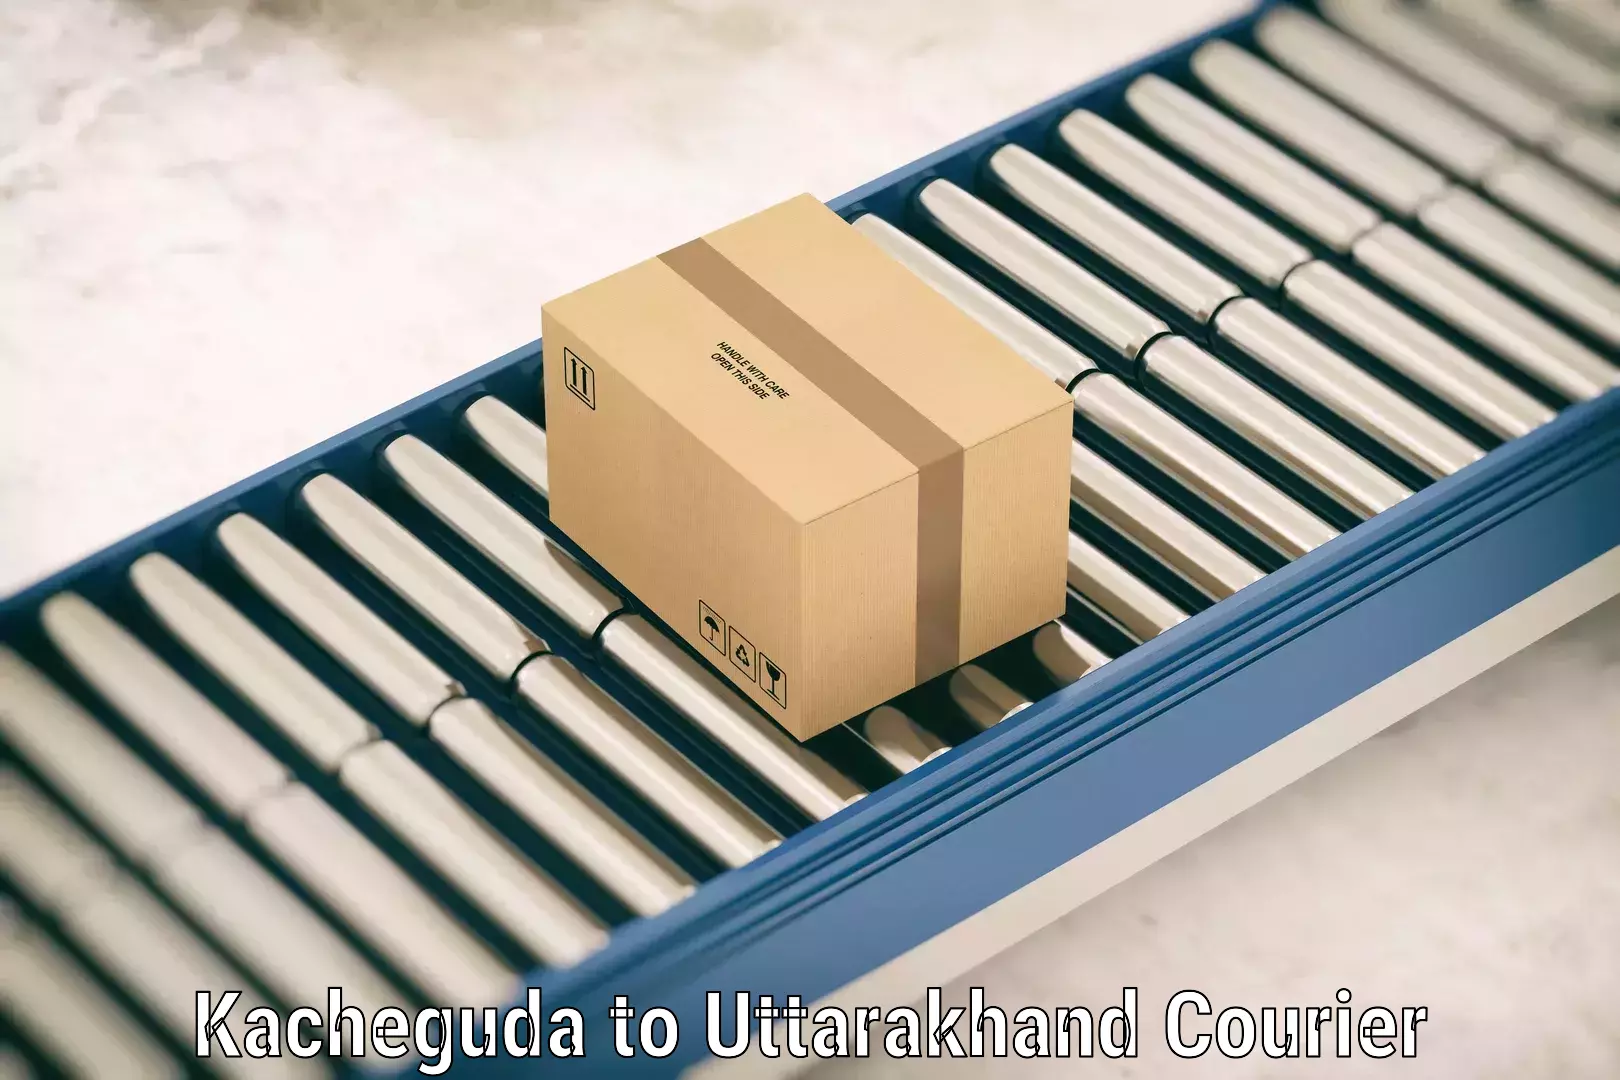 Luggage shipping specialists Kacheguda to Uttarakhand